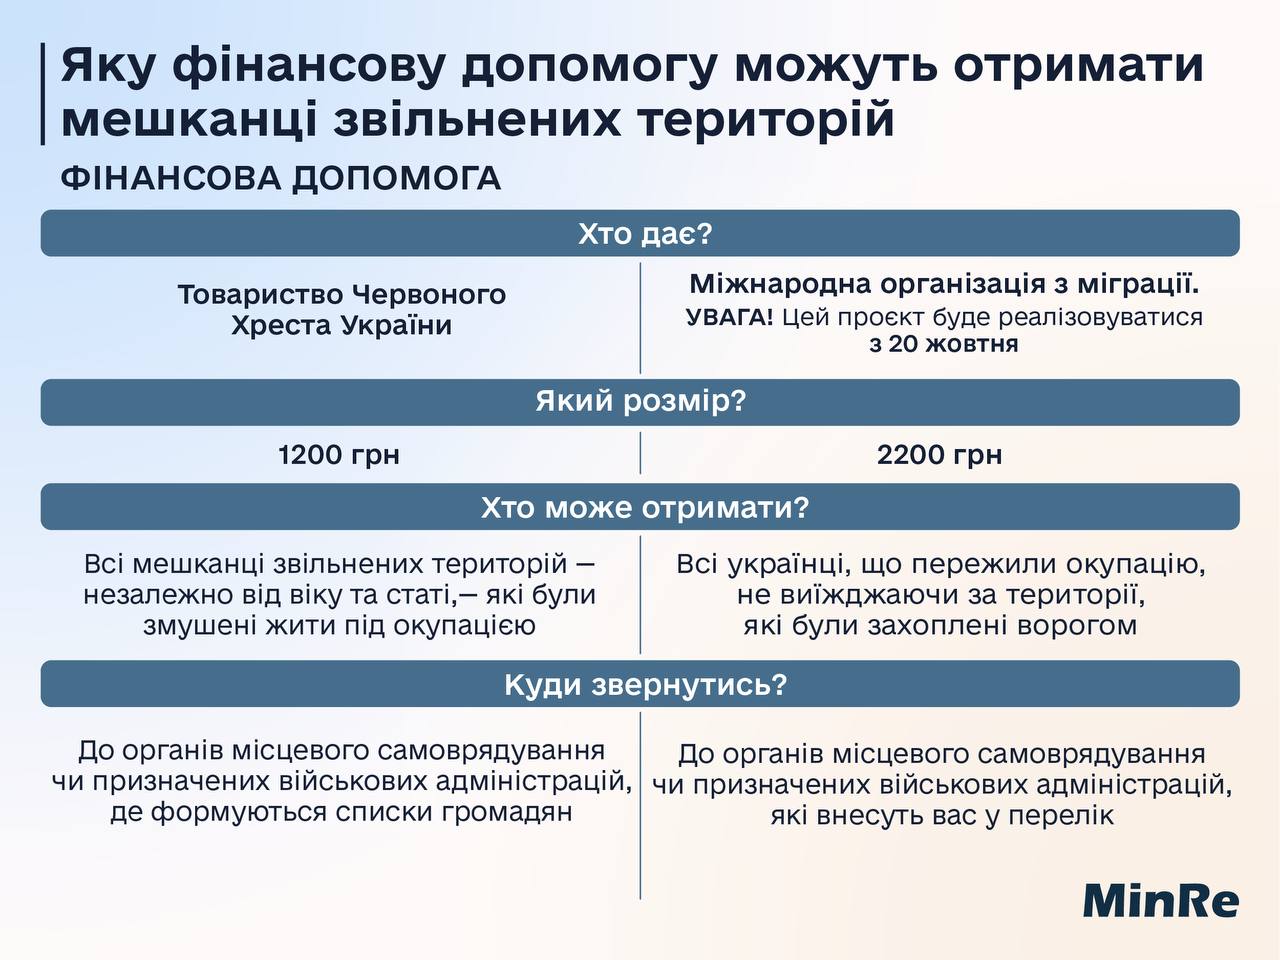 Украинцам с 20 октября начнут выплачивать новое пособие: кто сможет получить 2200 грн